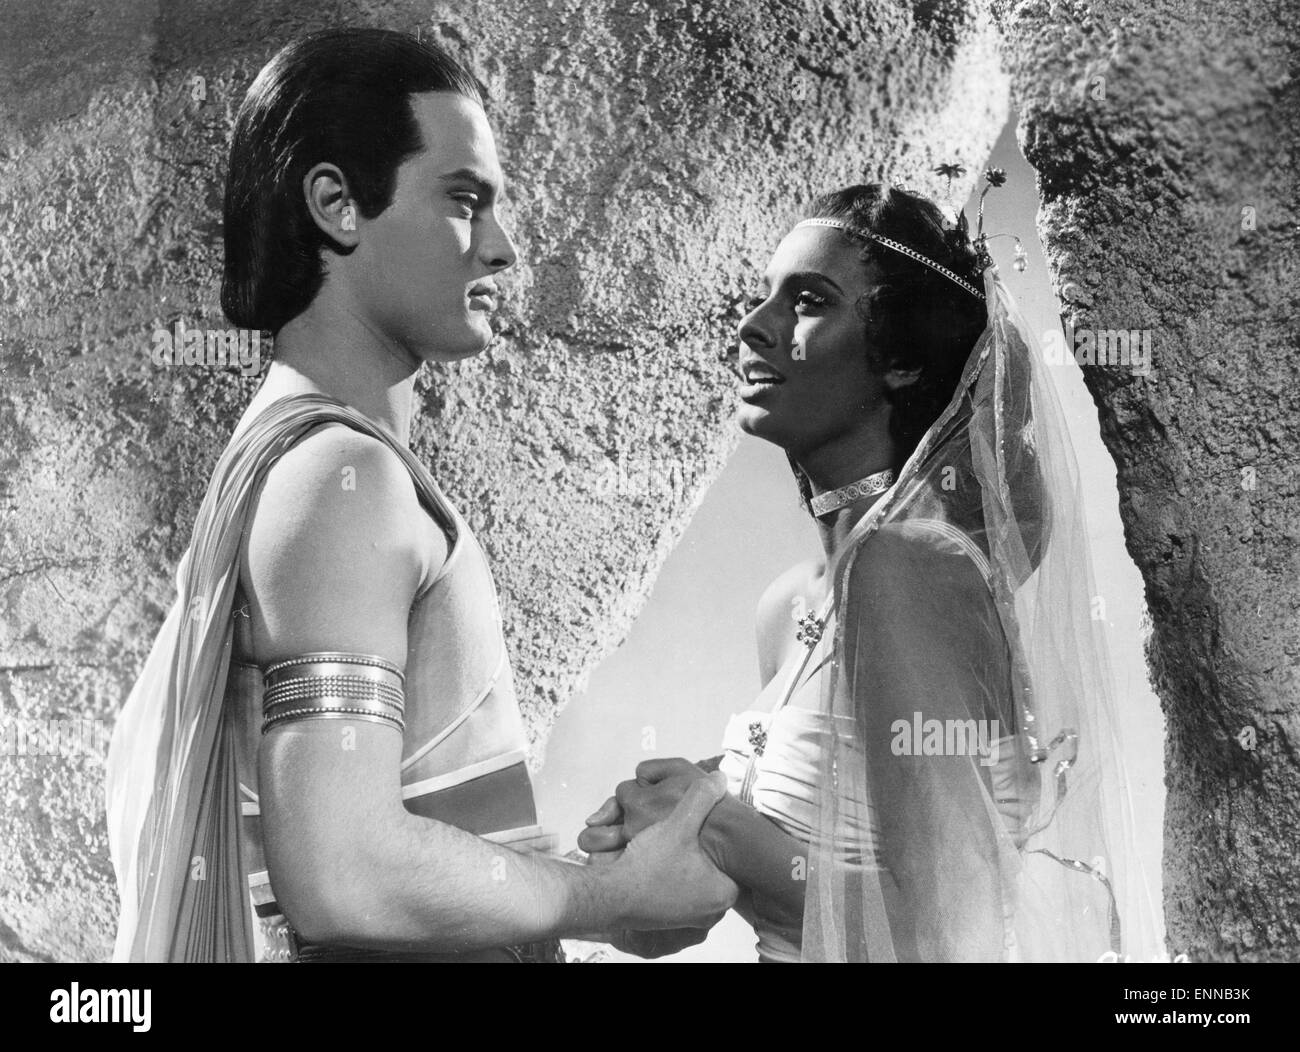 Aida, Italien 1954, Regie: Clemente Fracassi, Darsteller: Sophia Loren, Luciano Della Marra Stock Photo